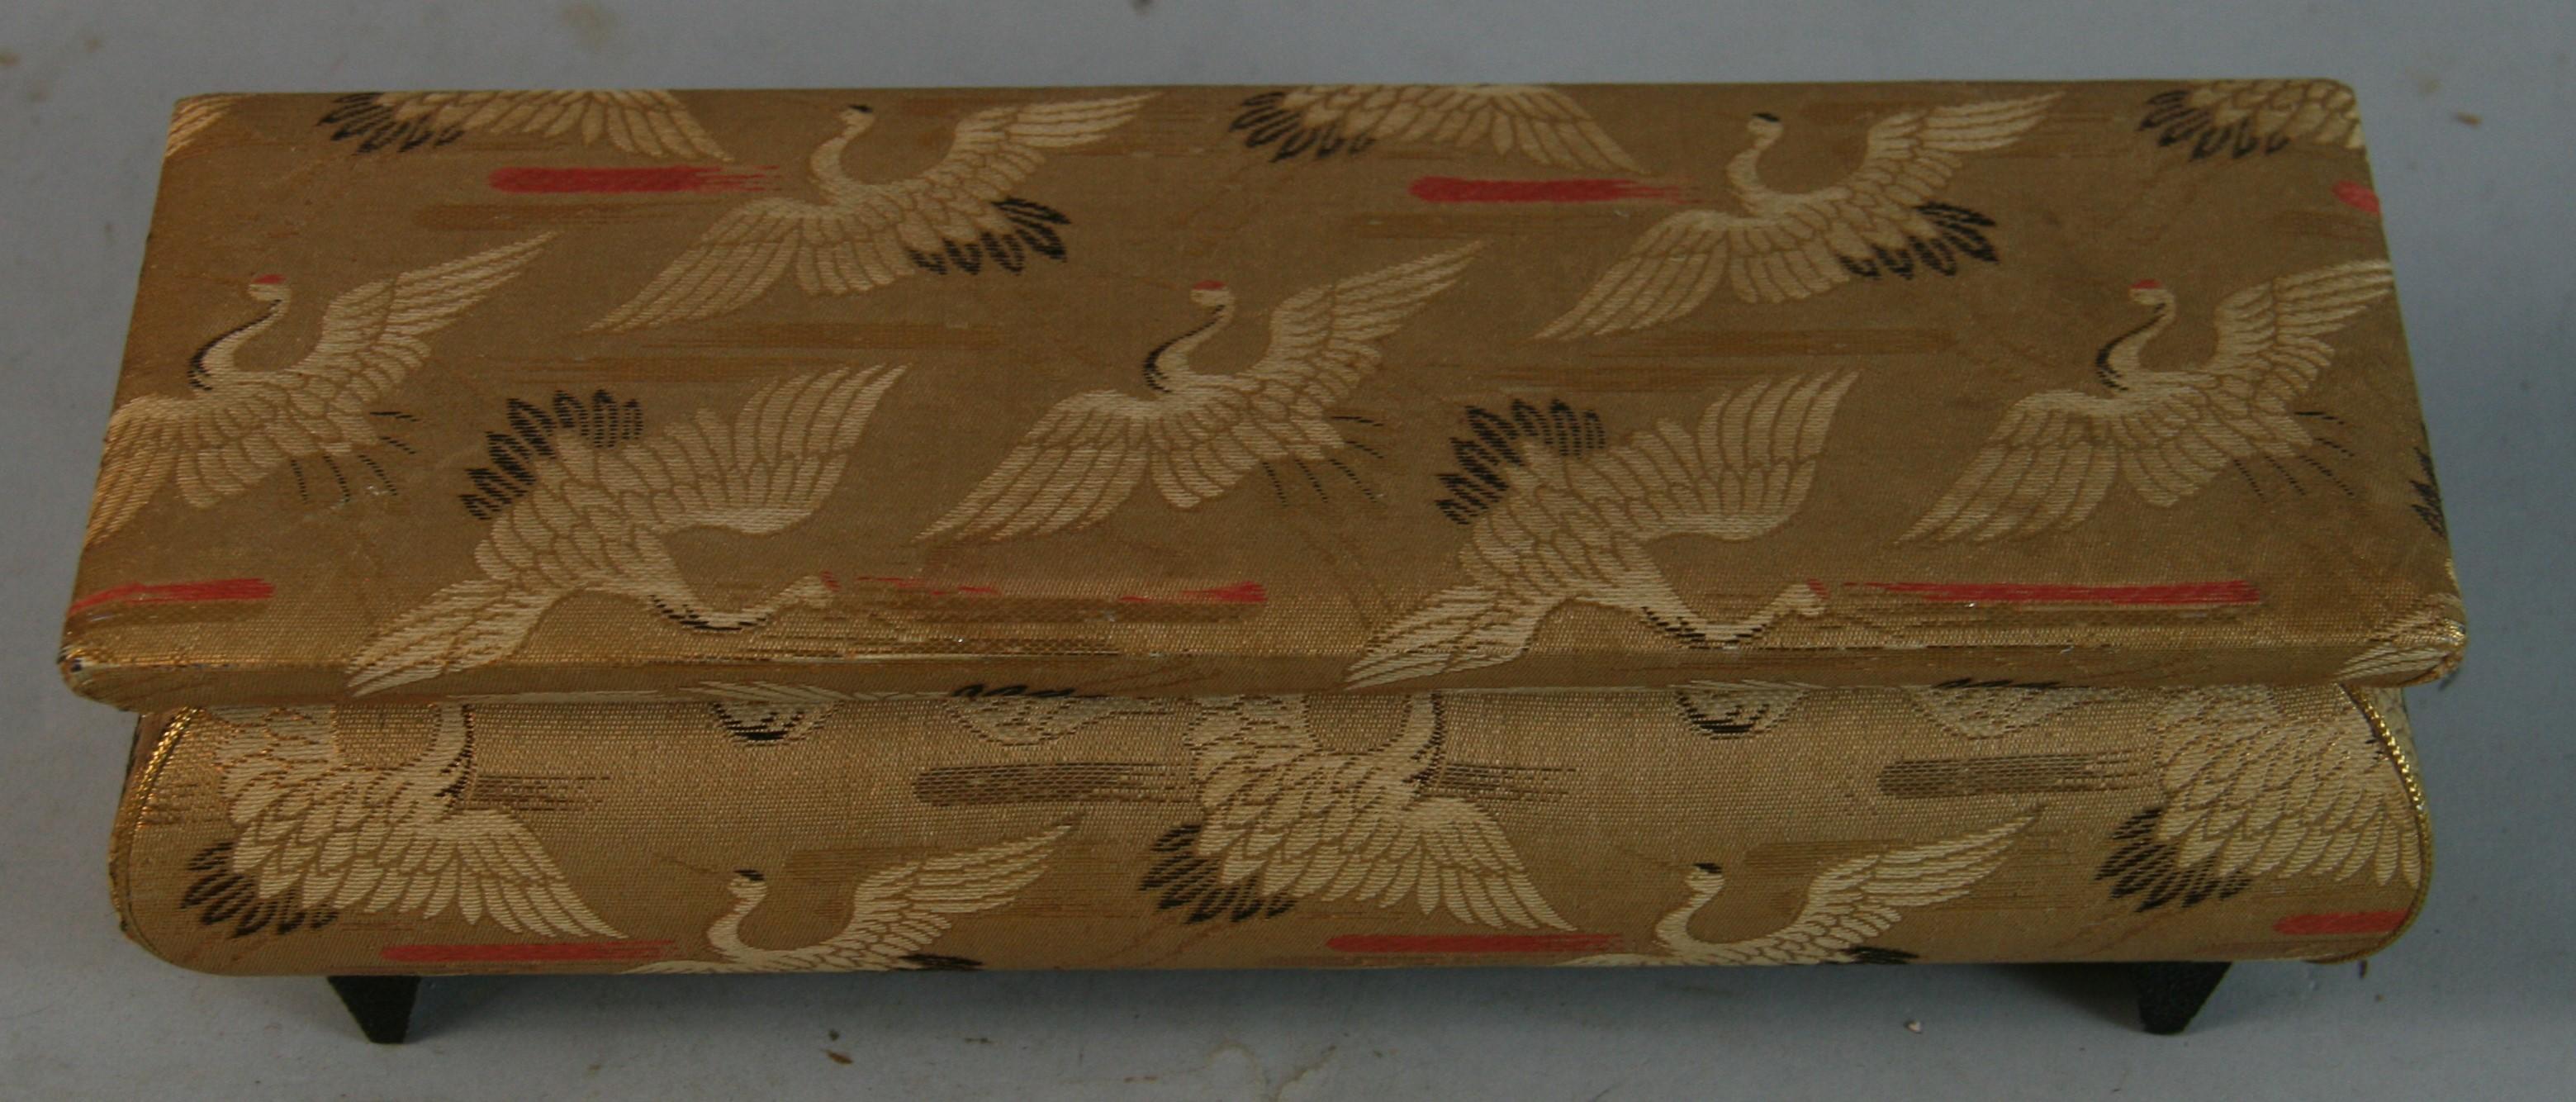 1574 Boîte à bijoux / boîte à musique japonaise vintage en bois recouverte de tissu
Fabriqué au Japon
Mécanisme musical  en état de fonctionnement